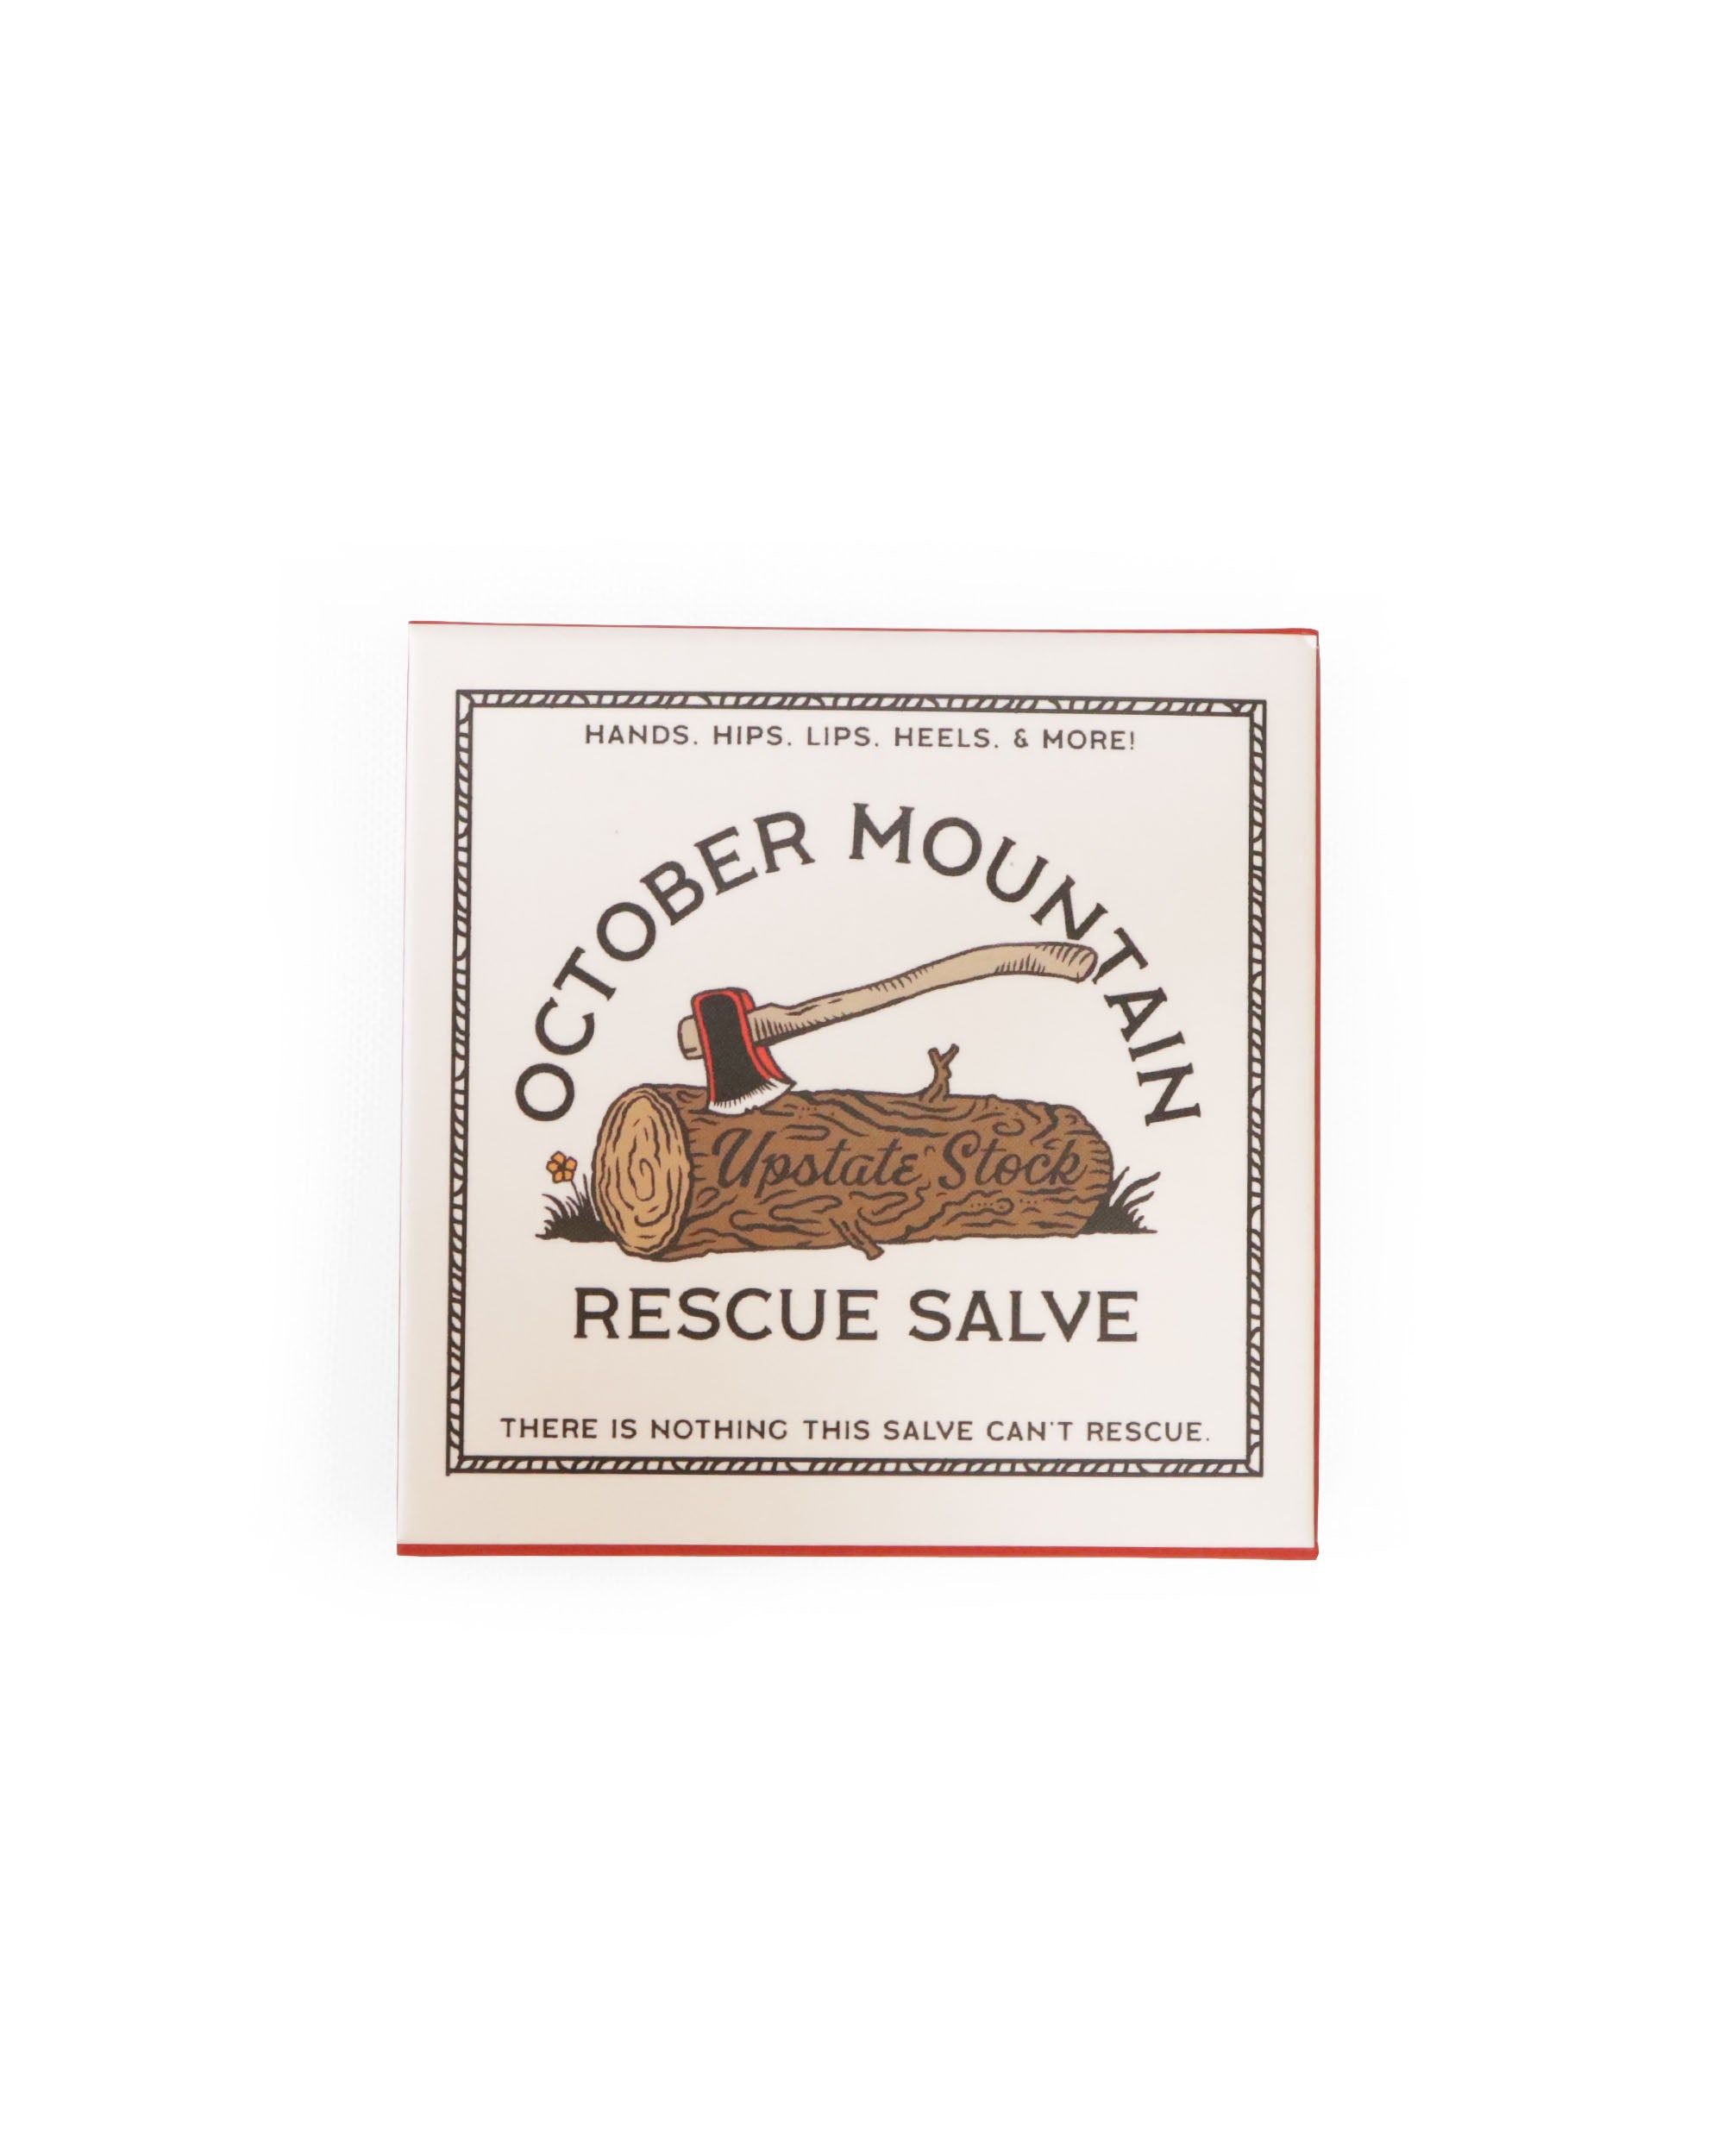 October Mountain Rescue Salve